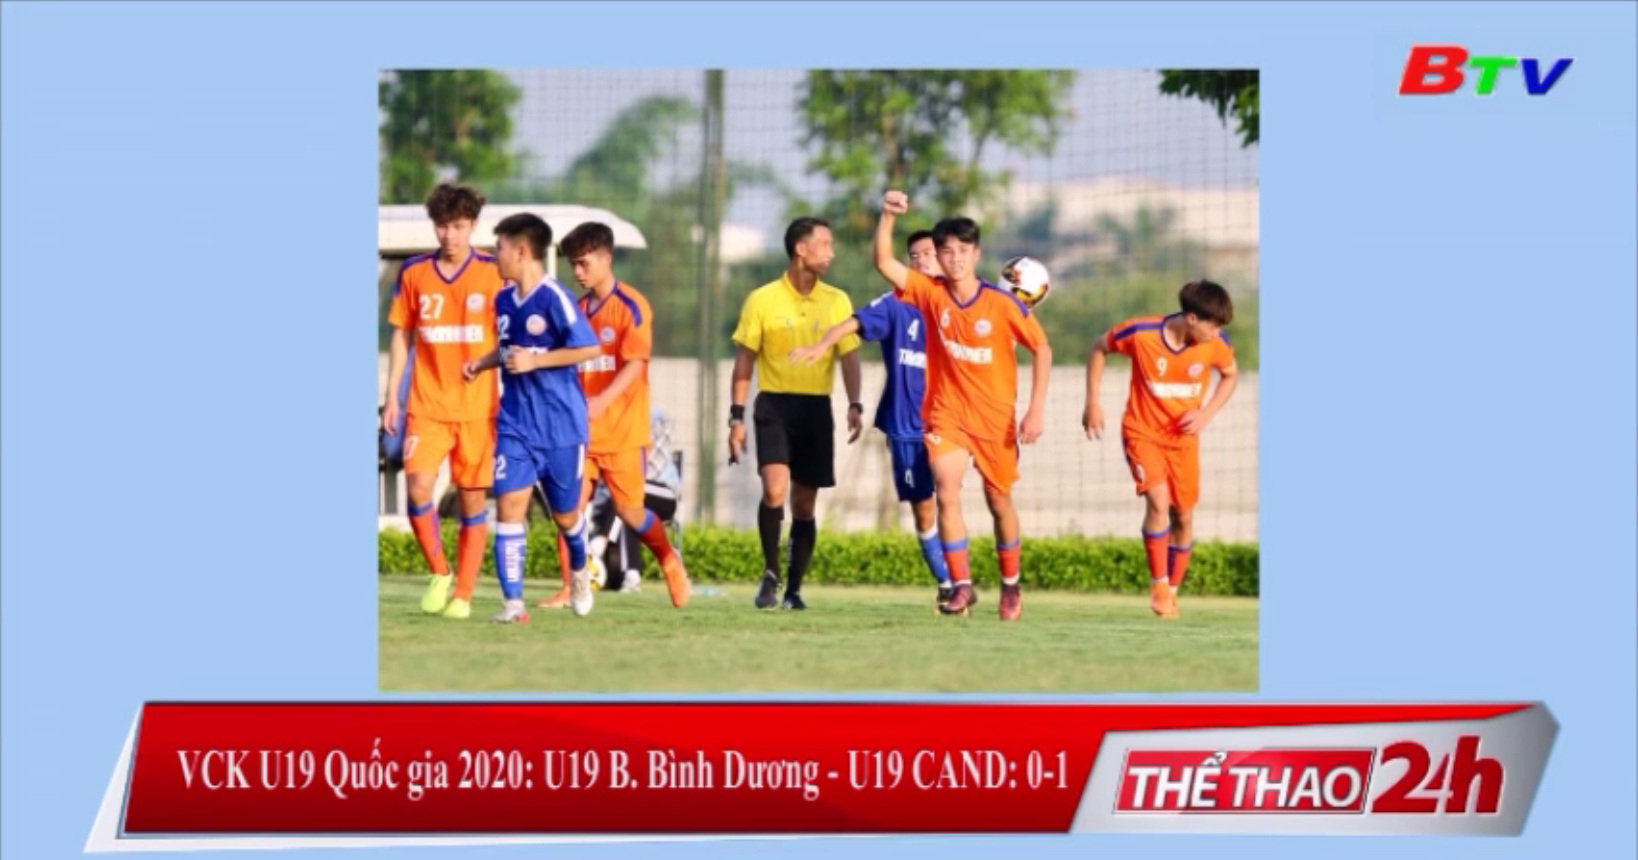 VCK U19 Quốc gia 2020 – U19 B.Bình Dương 0-1 U19 CAND